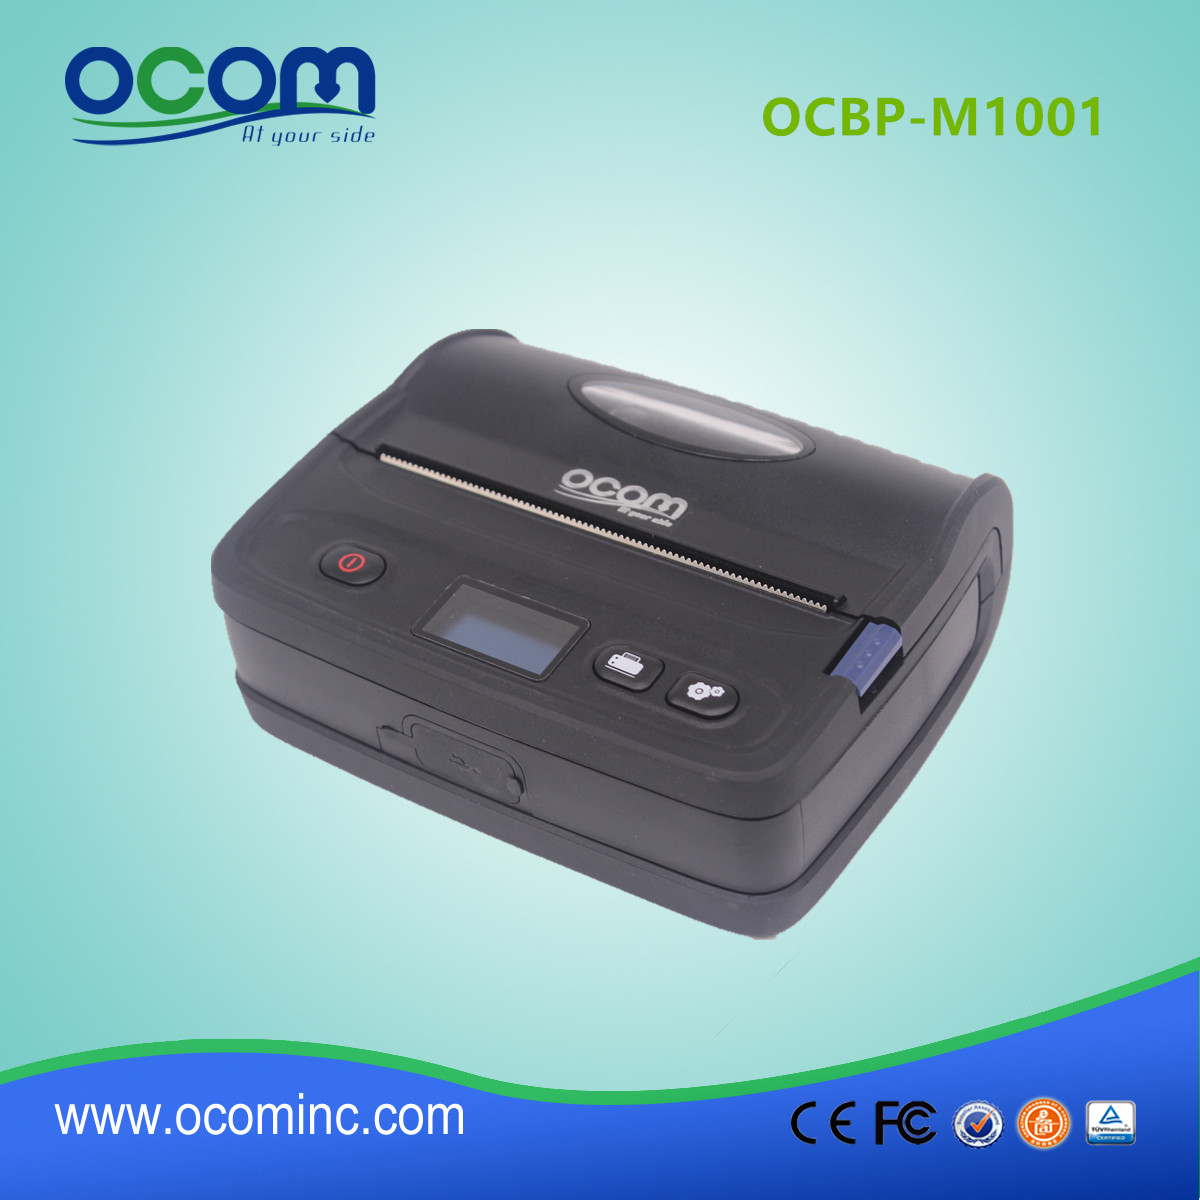 OCBP-M1001 高品质简洁型蓝牙热敏收据和标签打印机